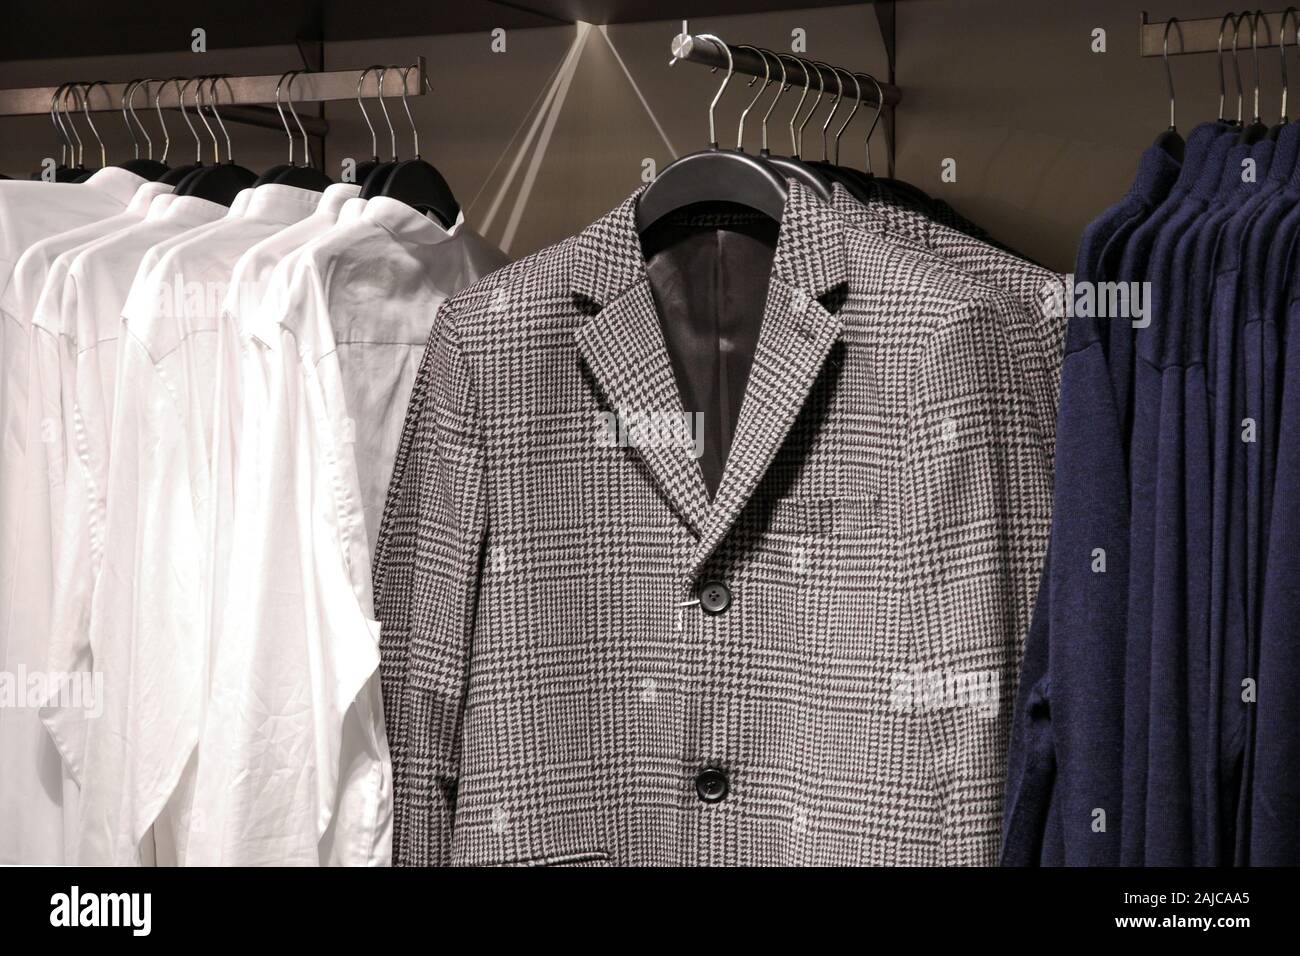 Des vêtements décontractés pour hommes en magasin, des vestes, chemises, gilets sur cintres Banque D'Images